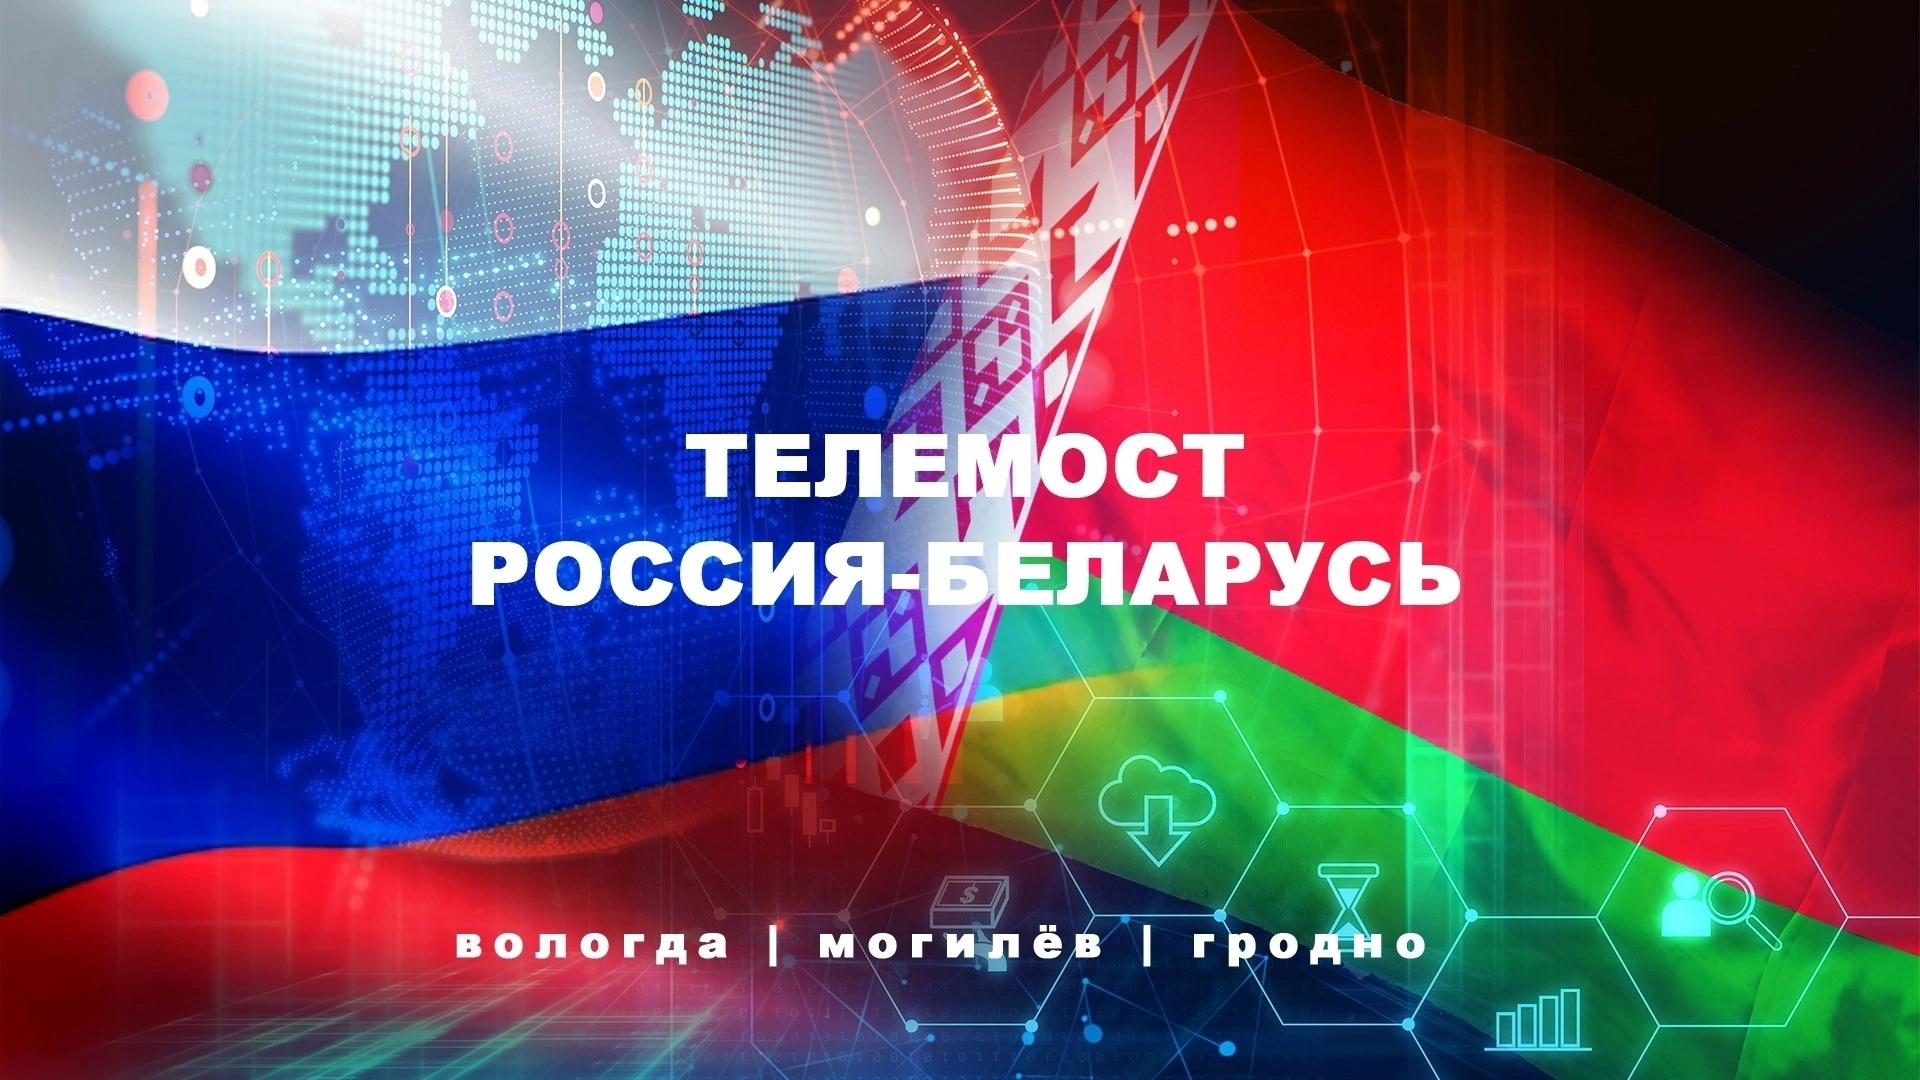 Телемост: Россия - Беларусь - состоялся 23 ноября!!!.